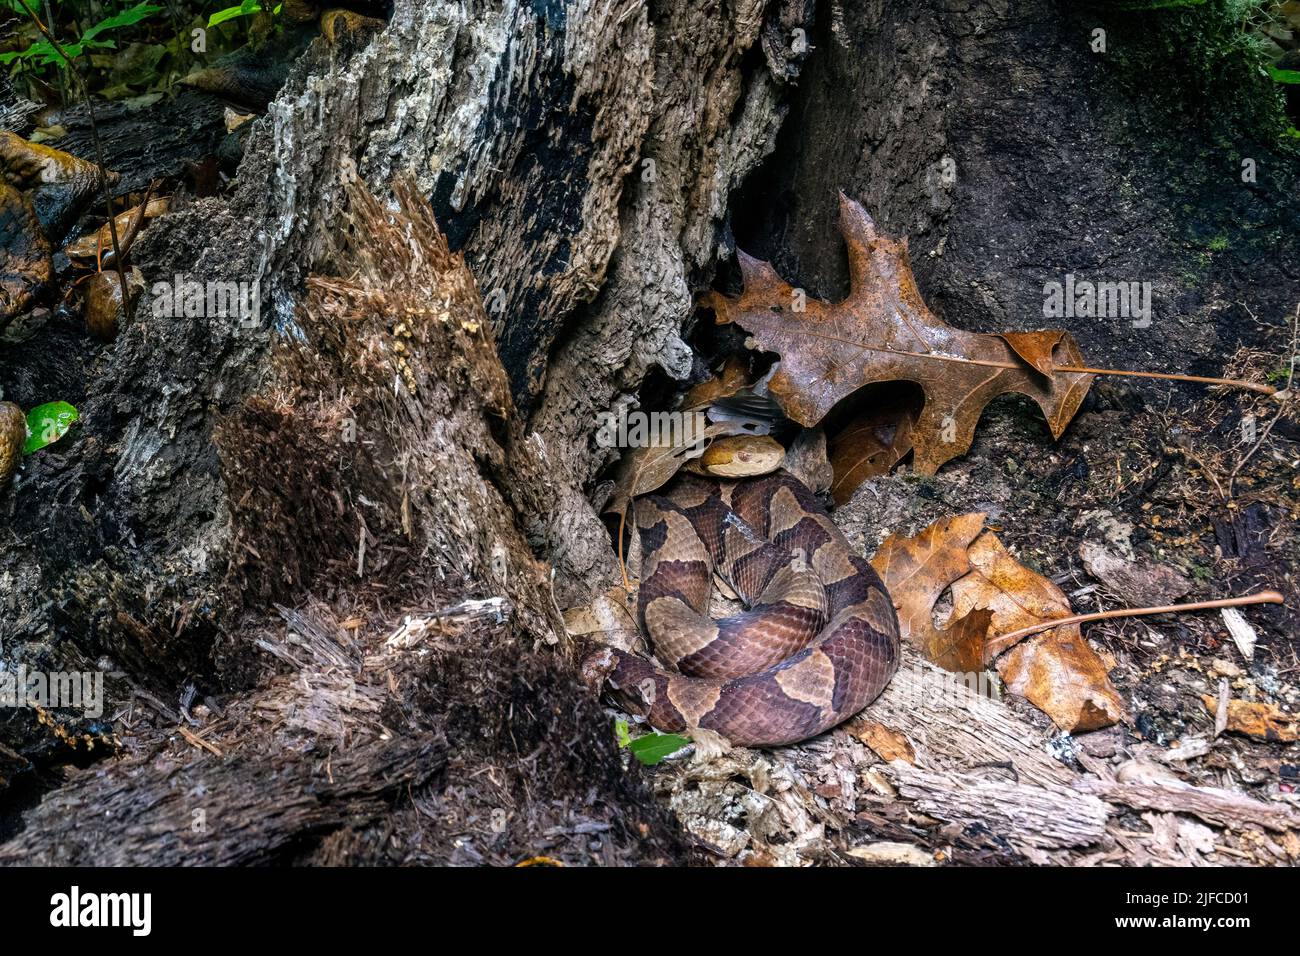 Testa di copperone orientale (Agkistrodon contortrix) che si nasconde in ceppo di albero - Bracken Preserve, Brevard, North Carolina, USA Foto Stock